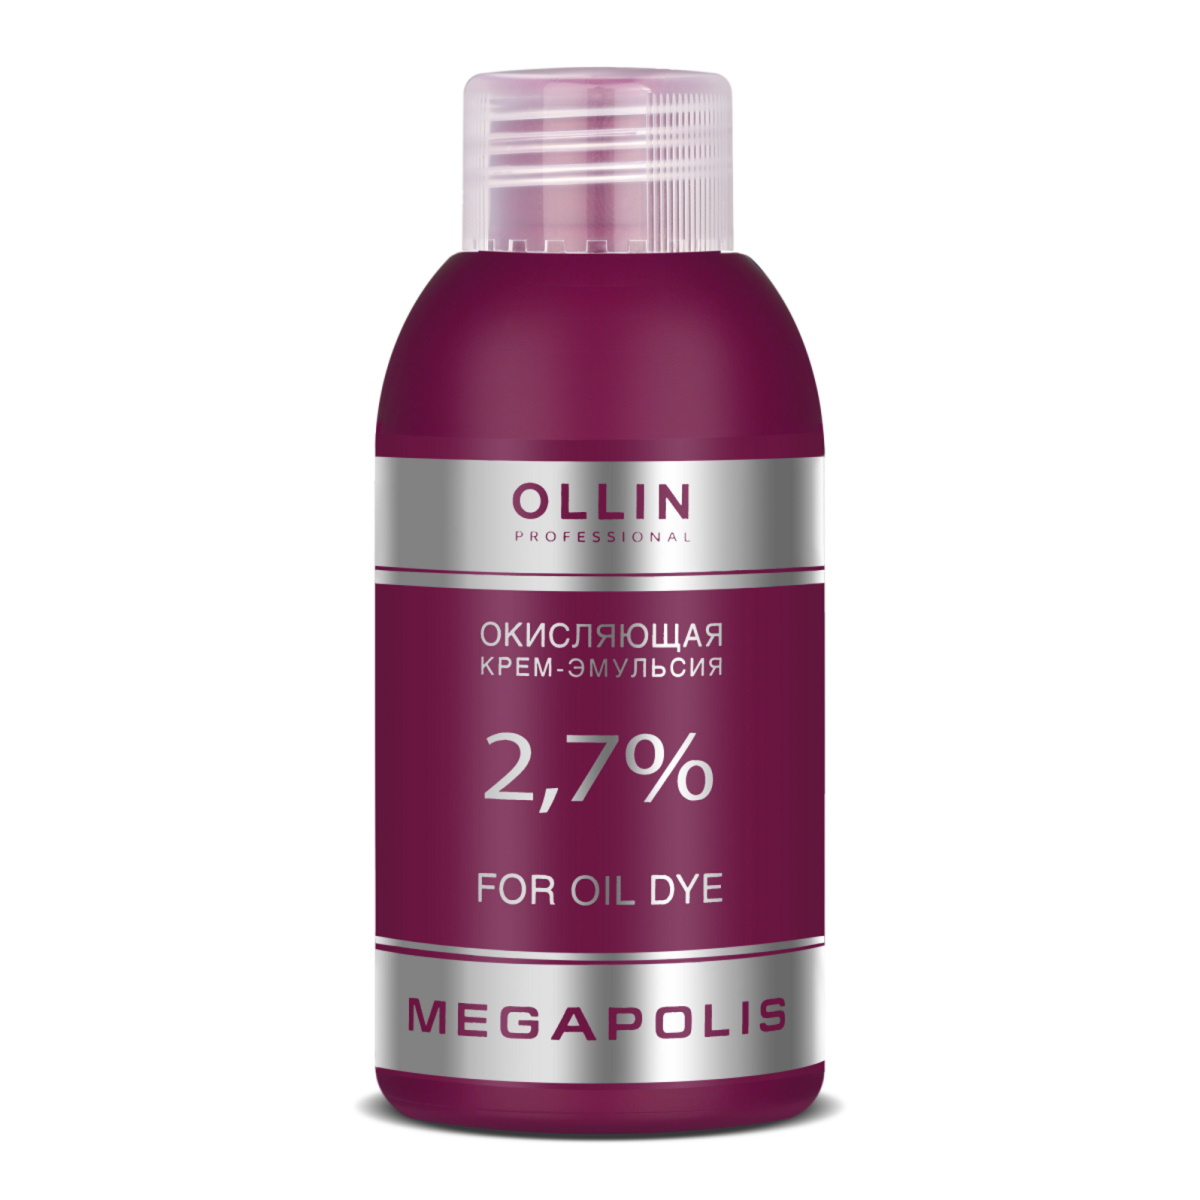 Окисляющая крем-эмульсия Ollin Professional Megapolis 2,7% 75 мл крем краска для бровей и ресниц графит ollin vision set